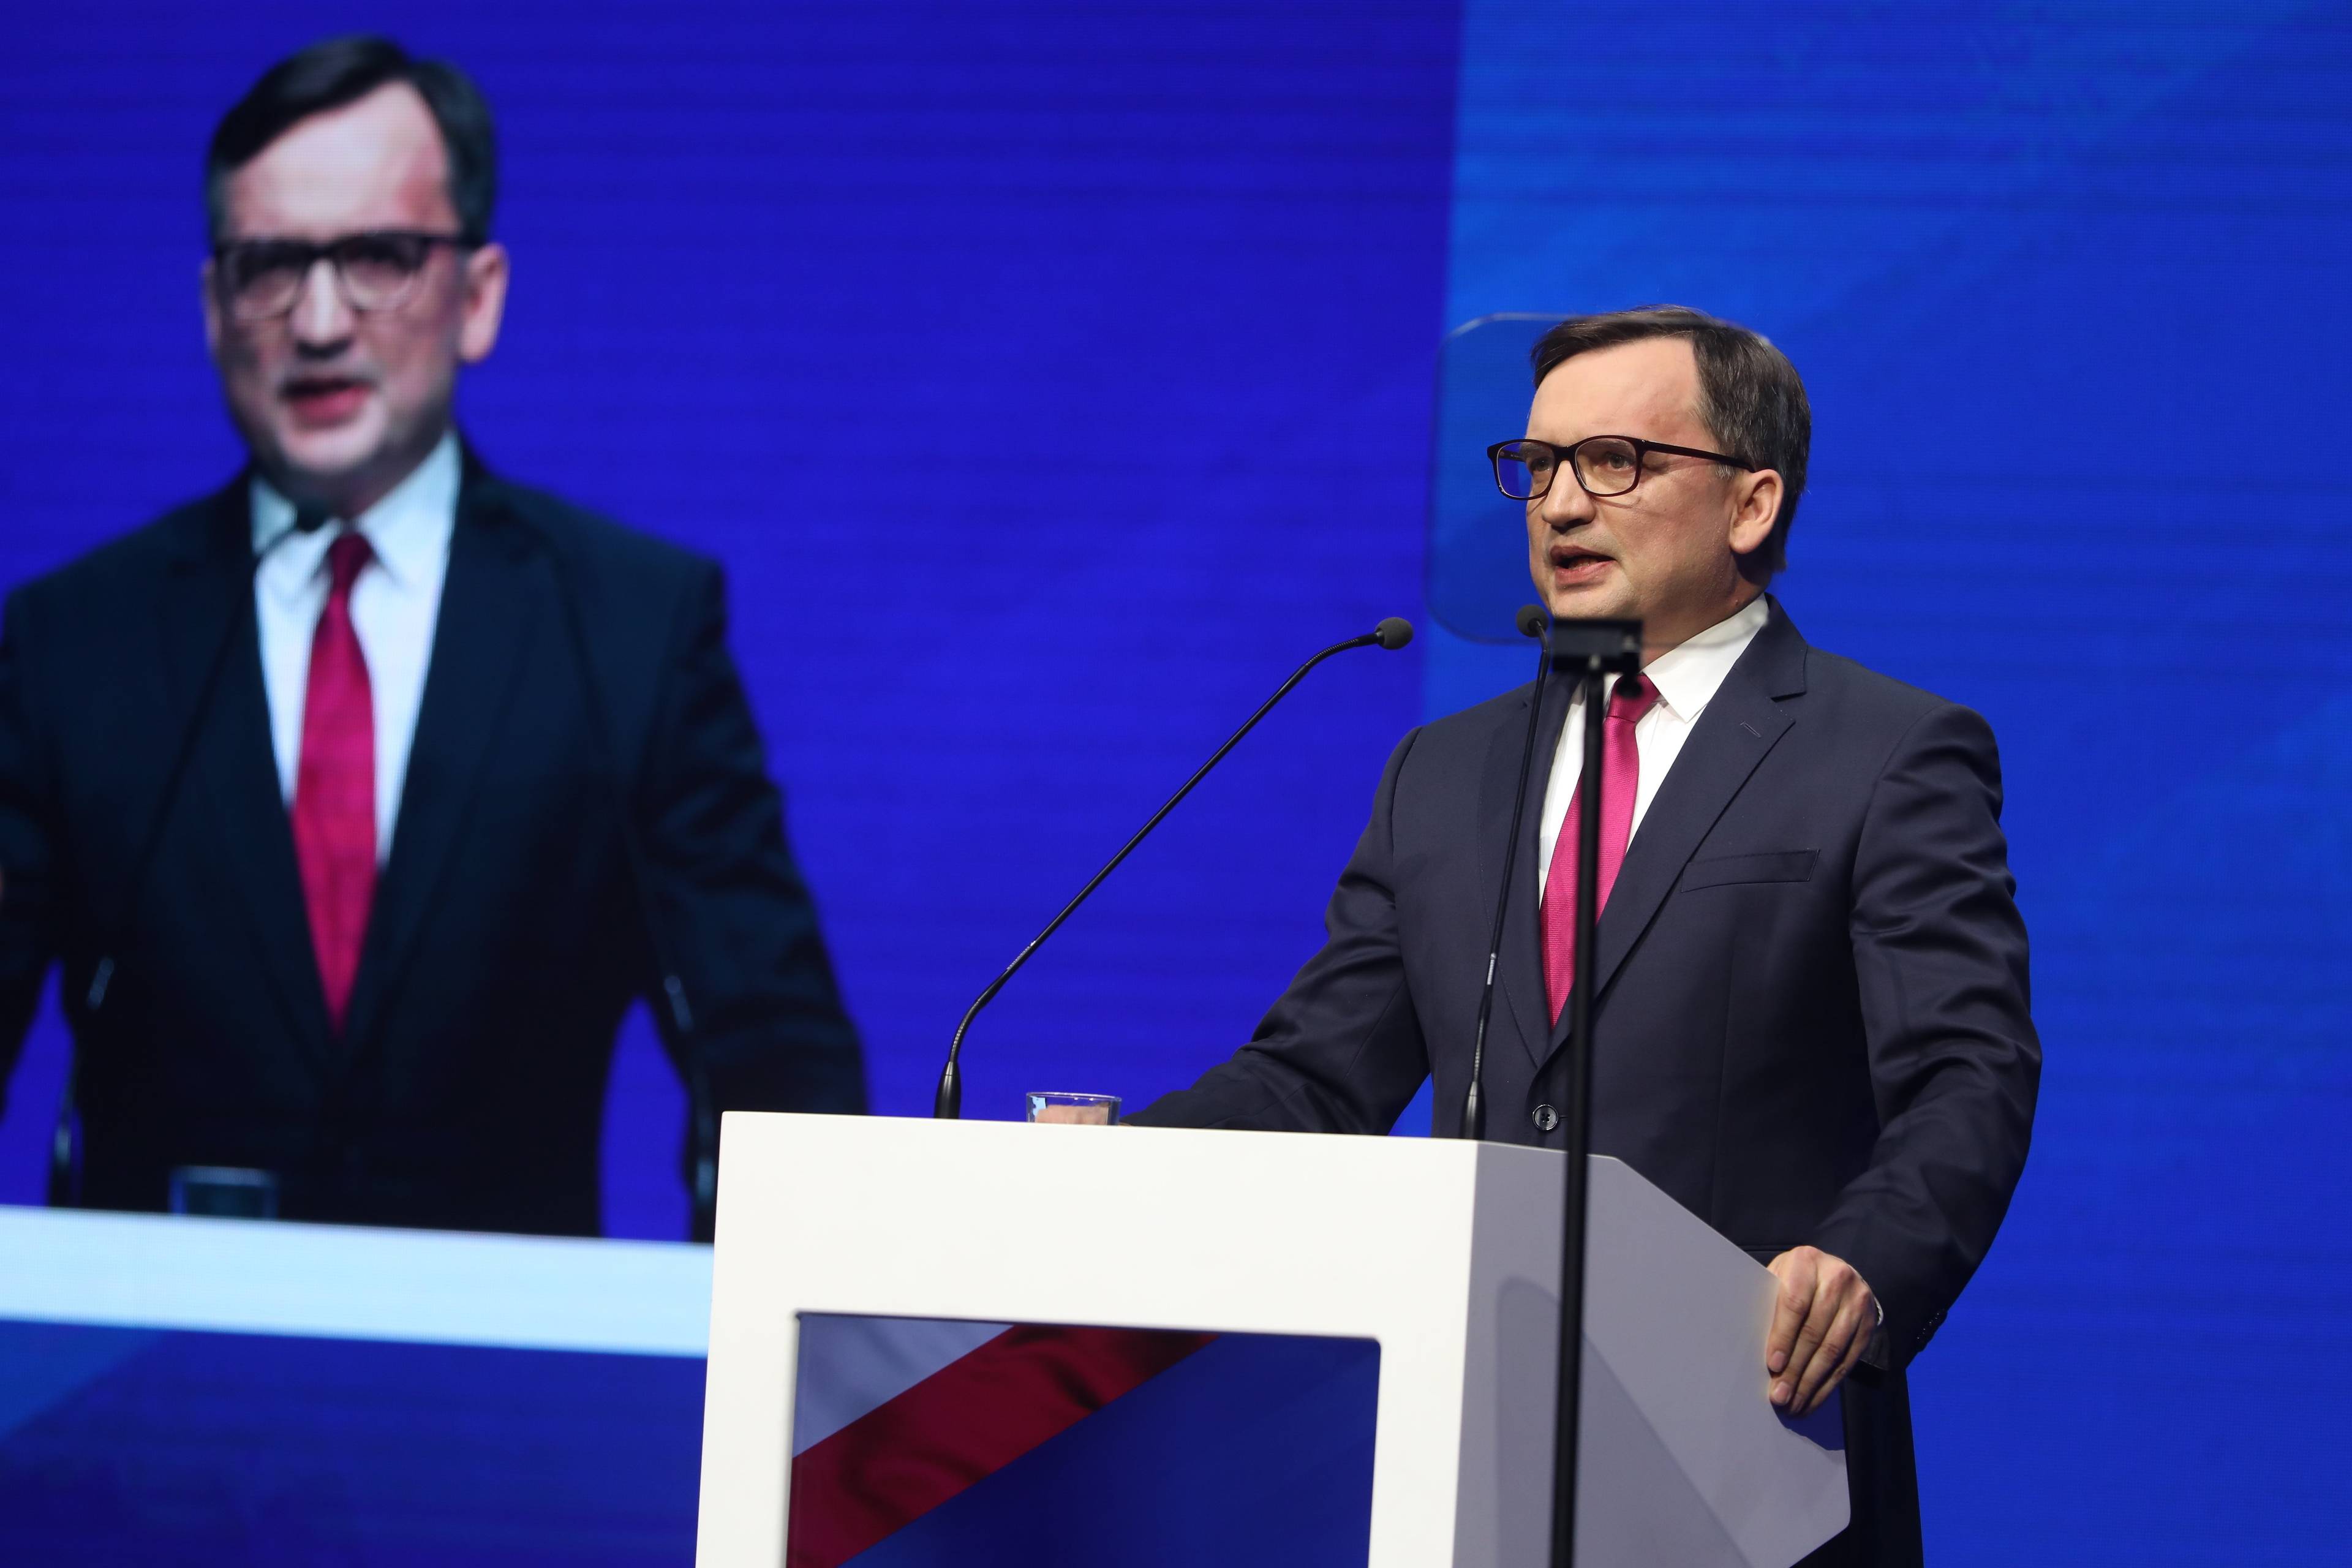 Na zdjęciu jest Minister sprawiedliwosci Zbigniew Ziobro podczas konwencji partyjnej Solidarnej Polski , na ktorej nazwe partii zmieniono na Suwerenna Polska .